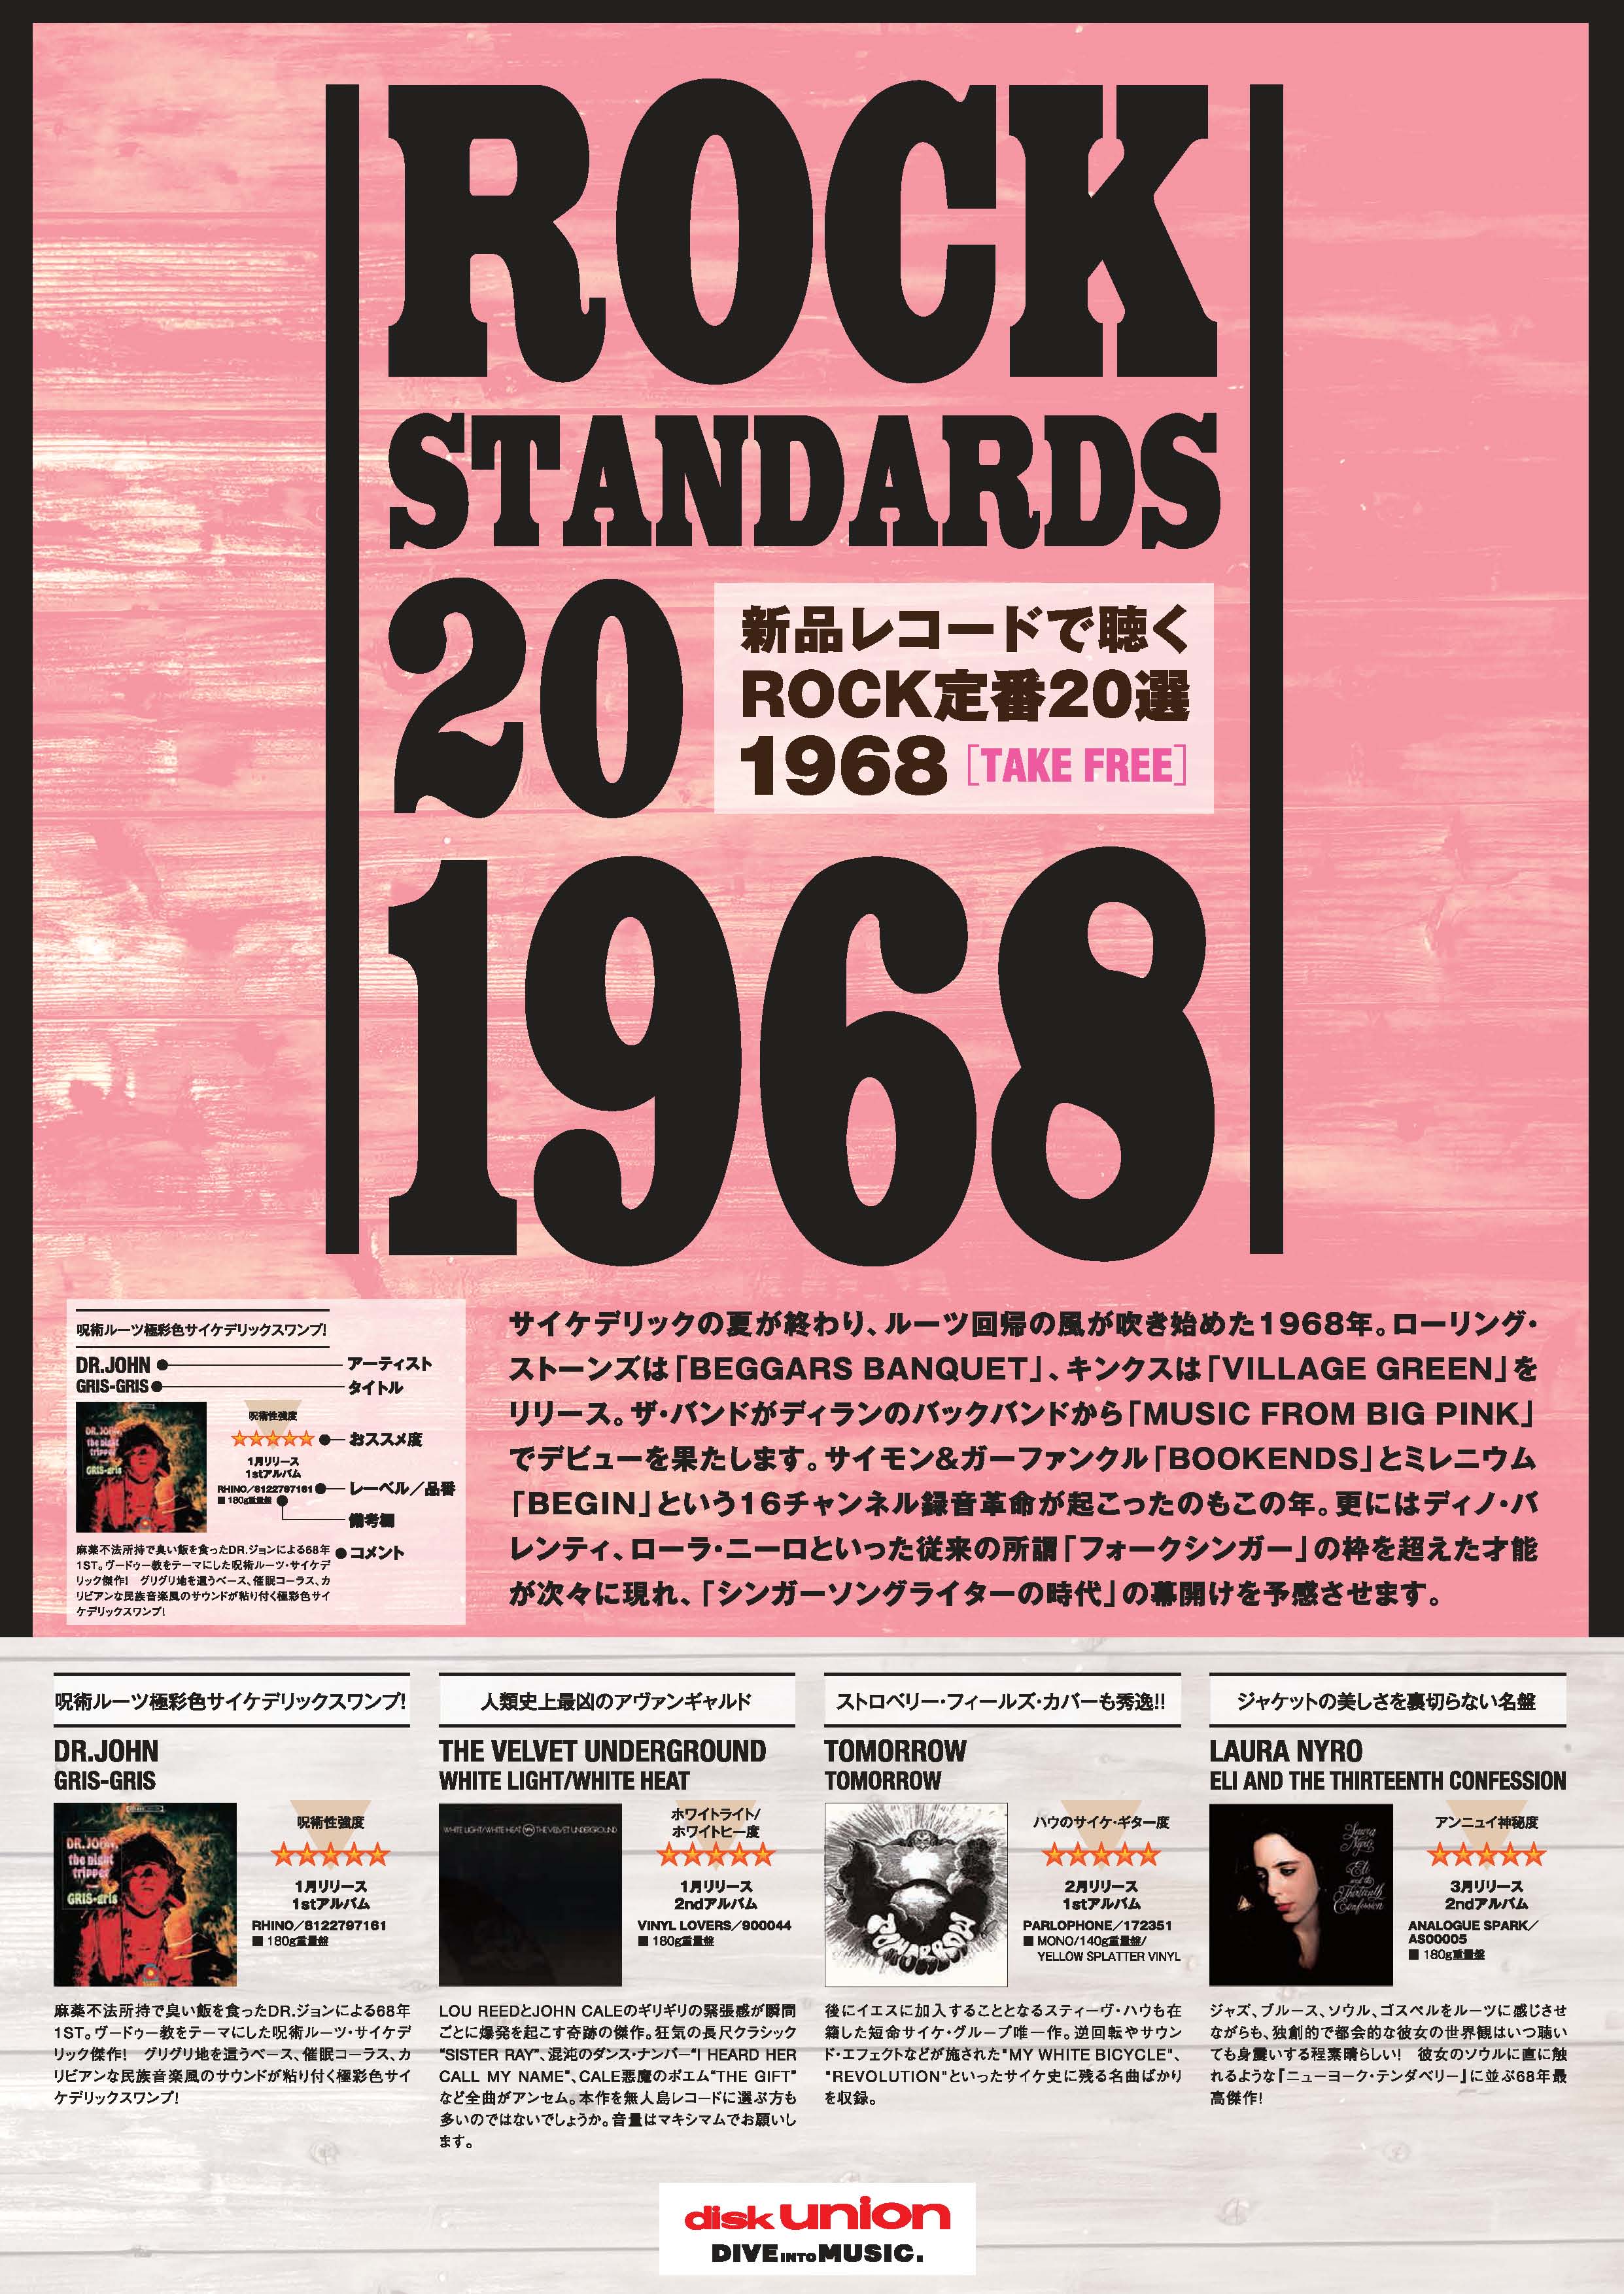 1968 / STANDARDS♪ 店頭でリーフレット配布! 「1968年のレコード20枚」 これまで好評の「200 STANDARDS 新品レコードで聴くロック定番200選」の番外編!